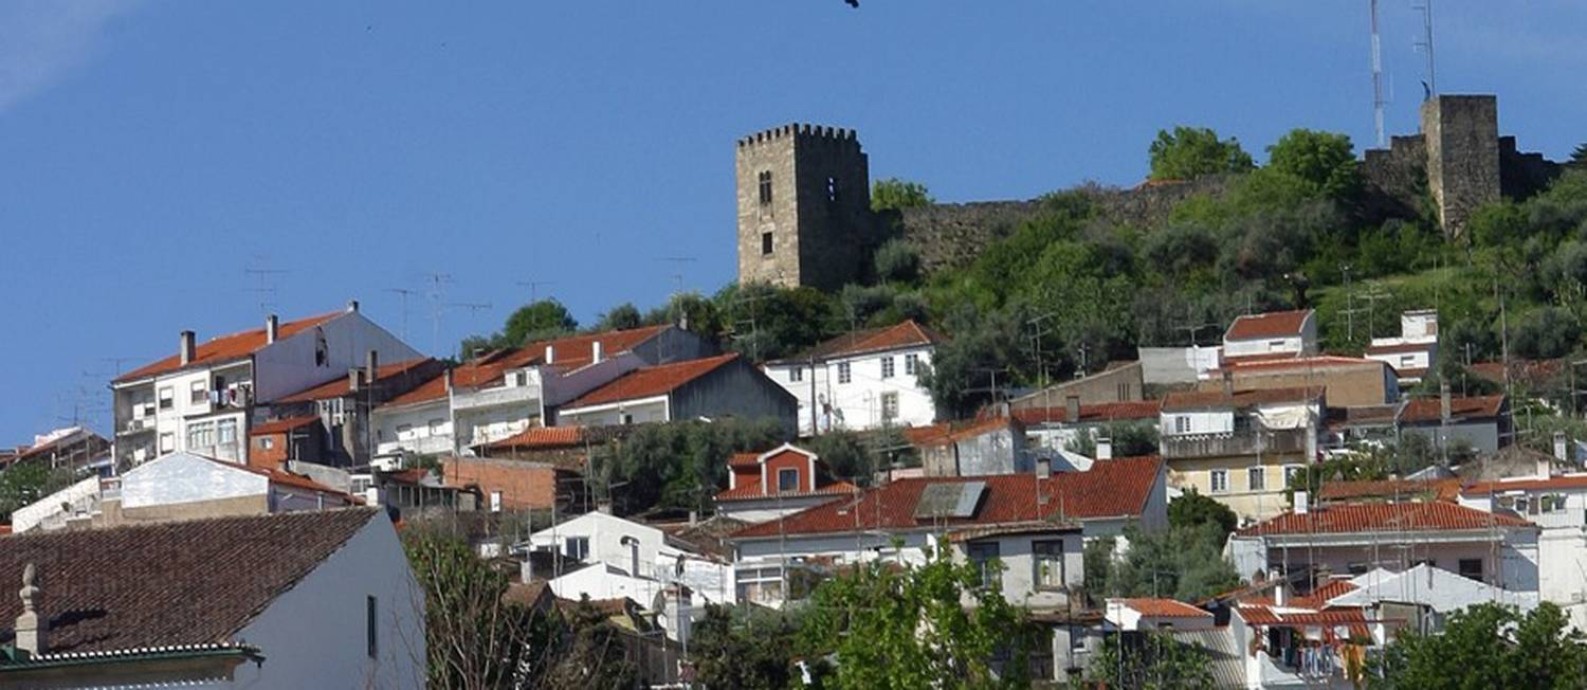 Paisagem de Castelo Branco, no interior de Portugal Foto: Divulgação